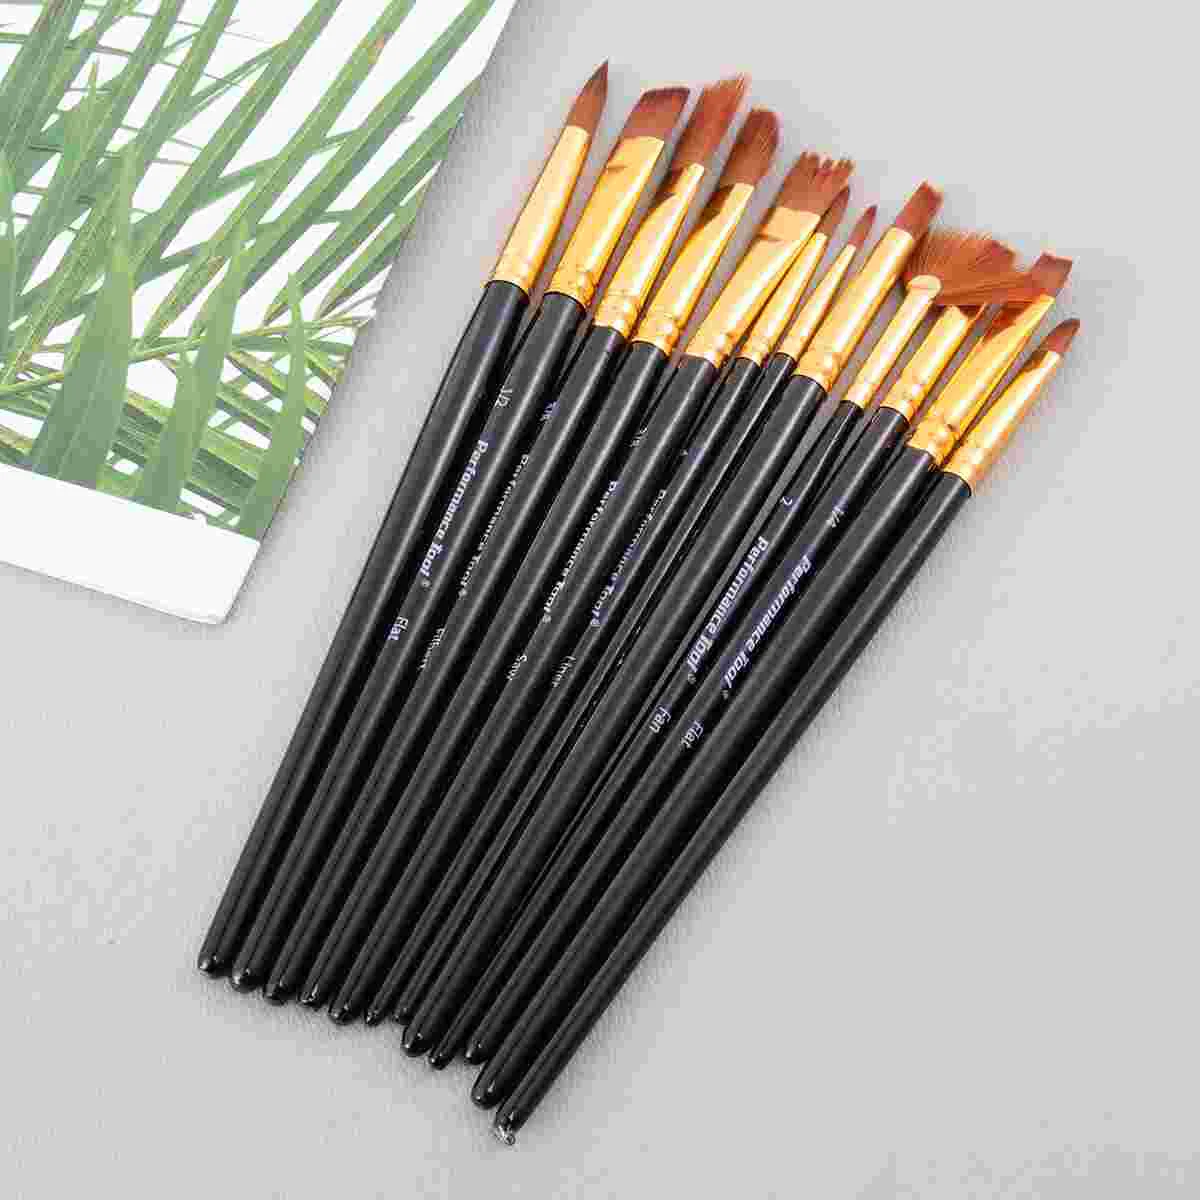 Painting Brushes Professional Painting Brushes Watercolor Brush Set Oil Brush Painting Brushes Set Paintbrushes